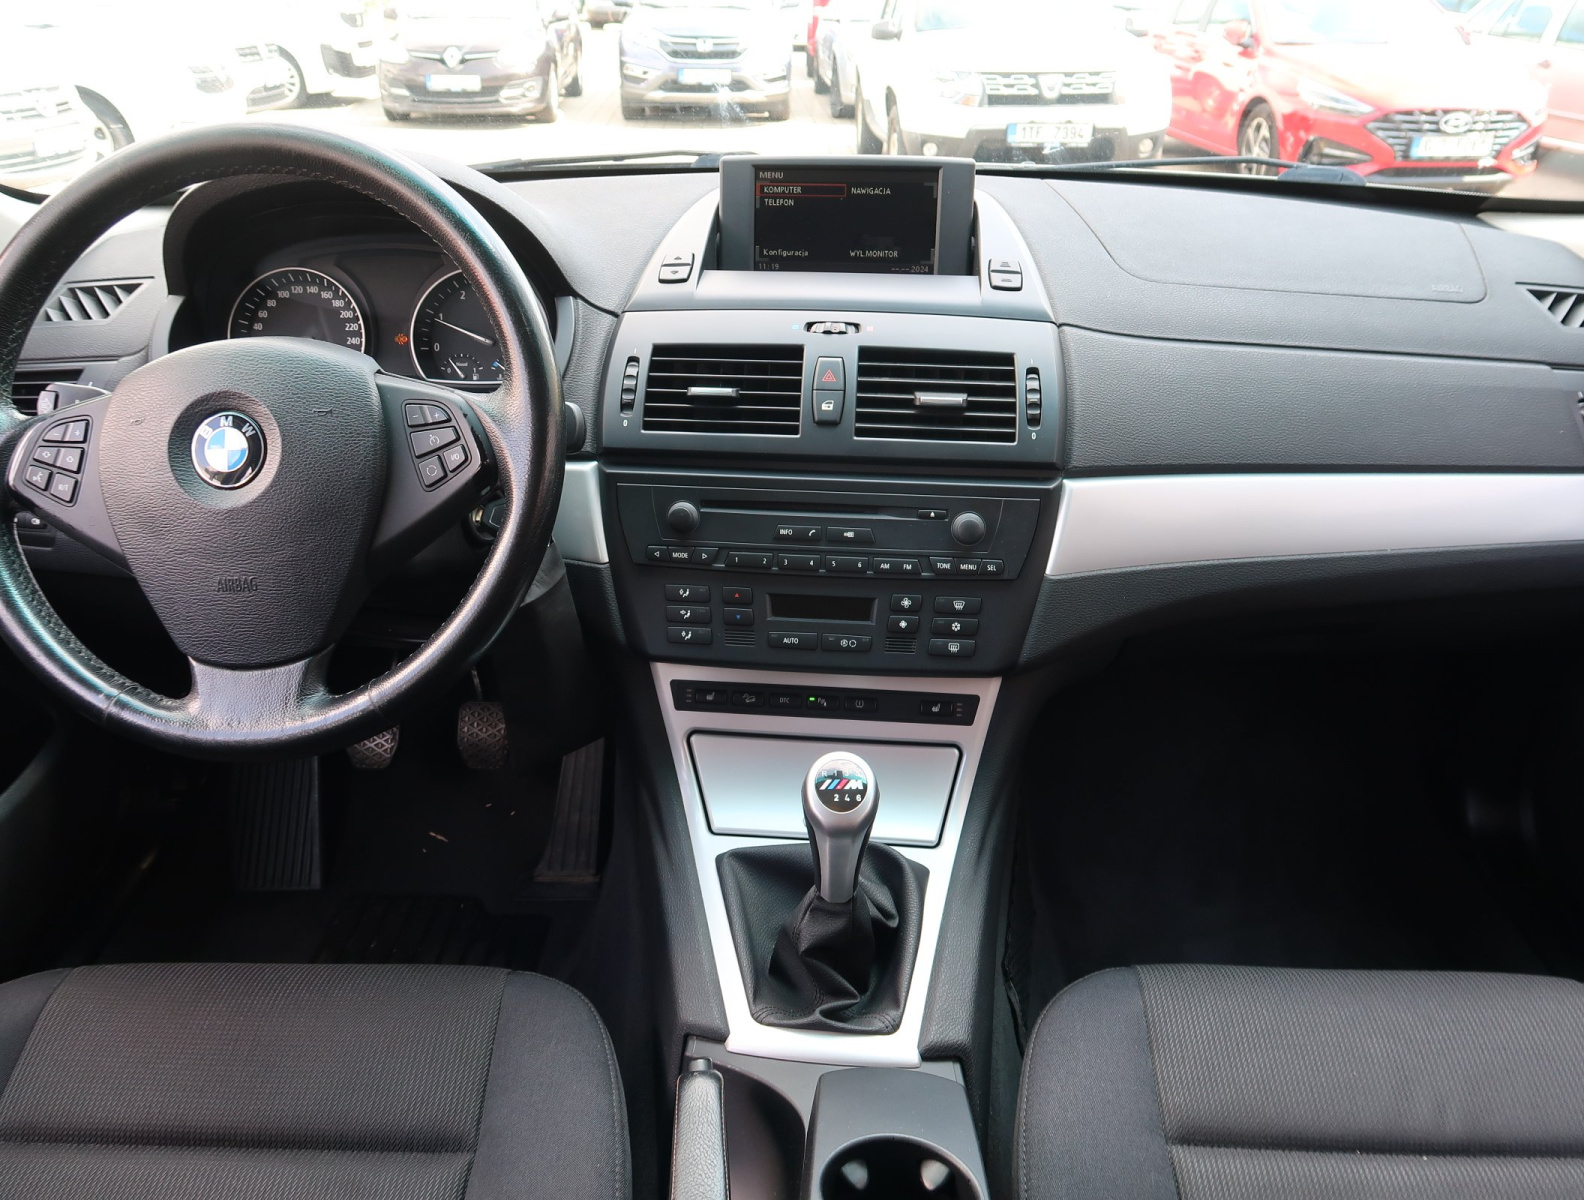 BMW X3, 2007, 2.0d, 130kW, 4x4